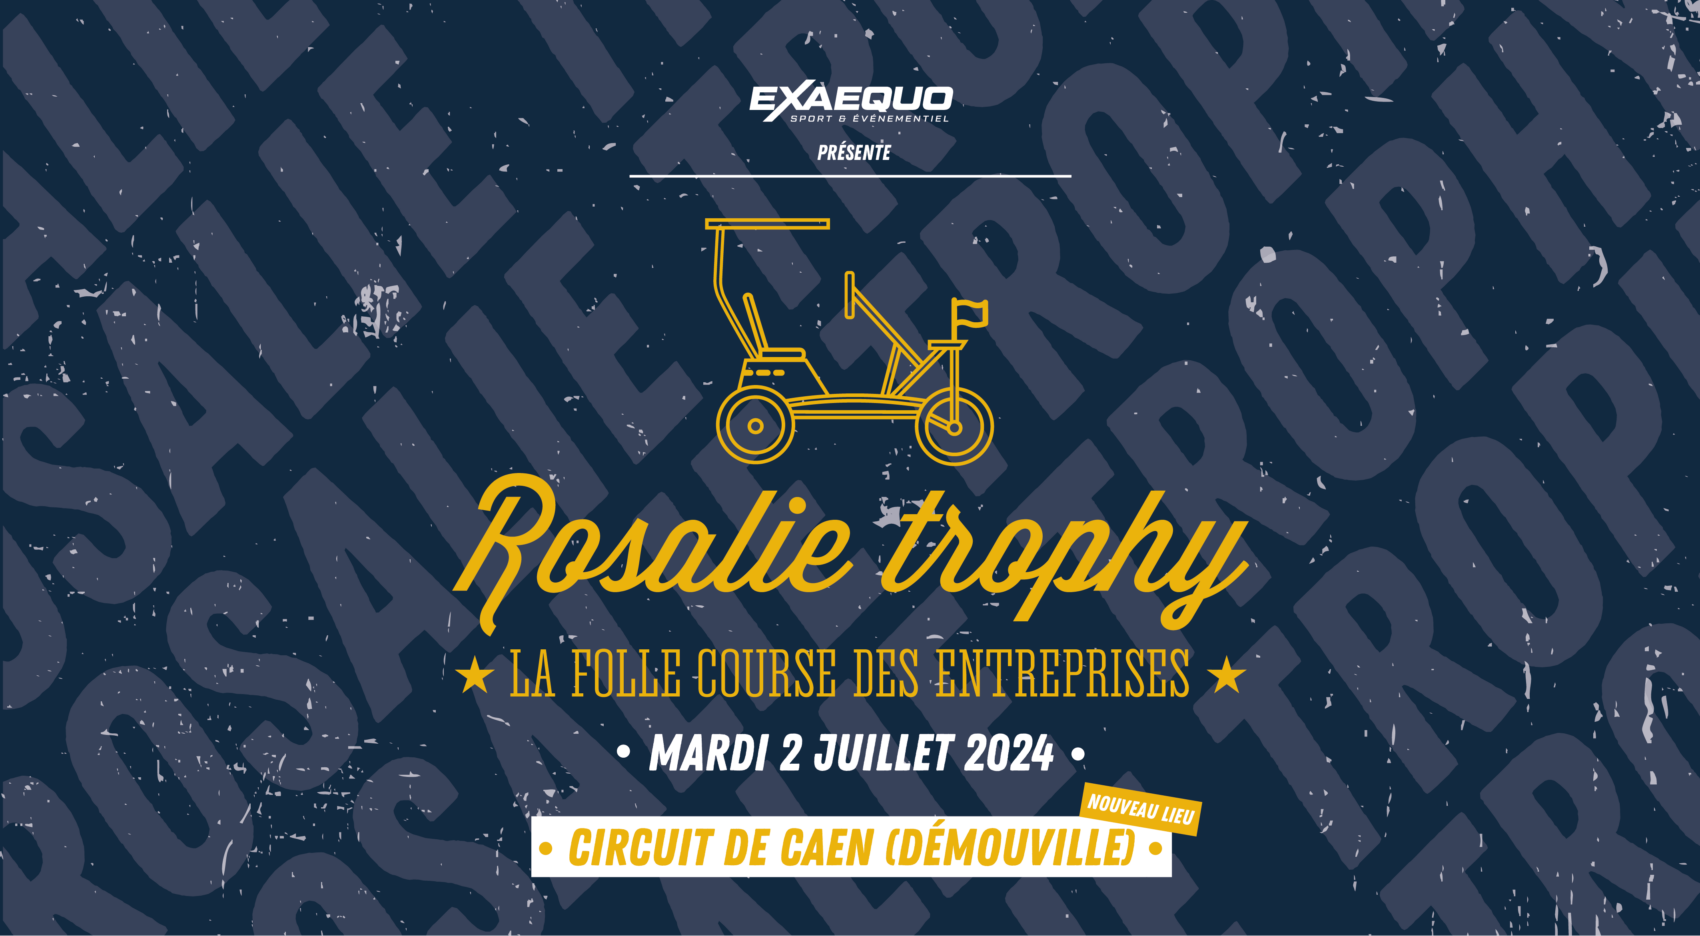 Rosalie Trophy événement inter-entreprise challenge Exaequo team-building